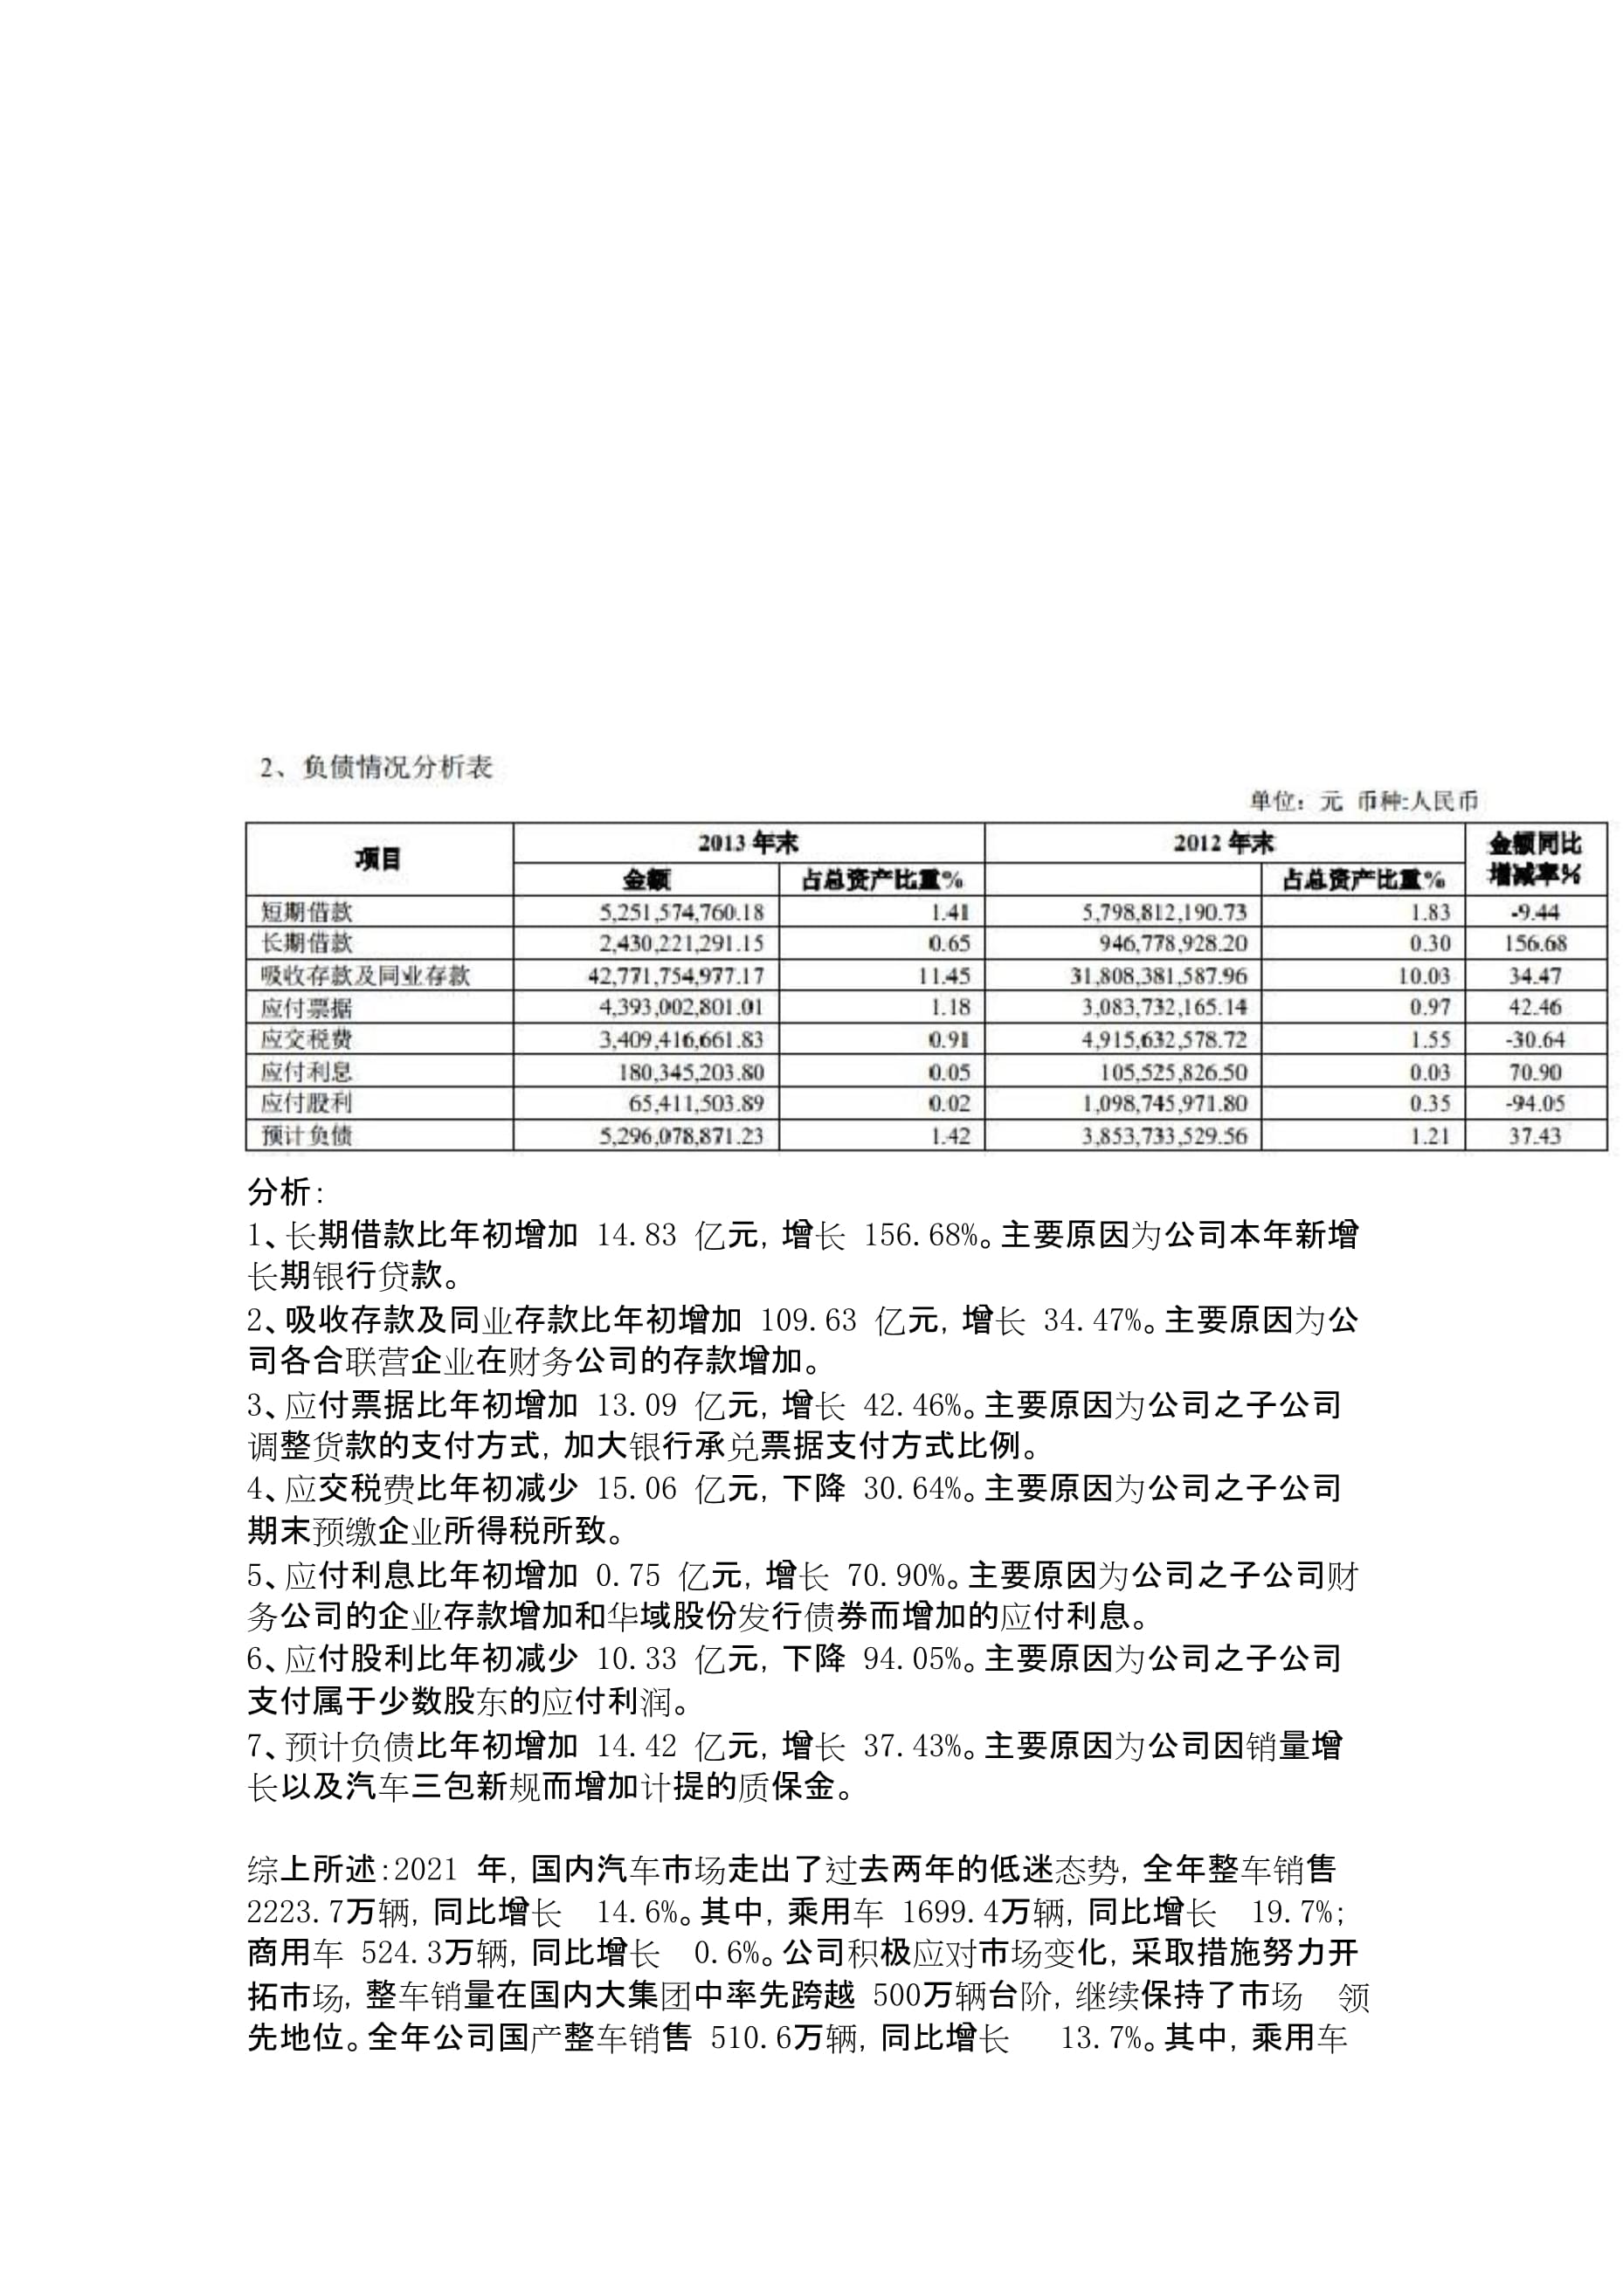 上海汽车集团公司2013年财务分析报告